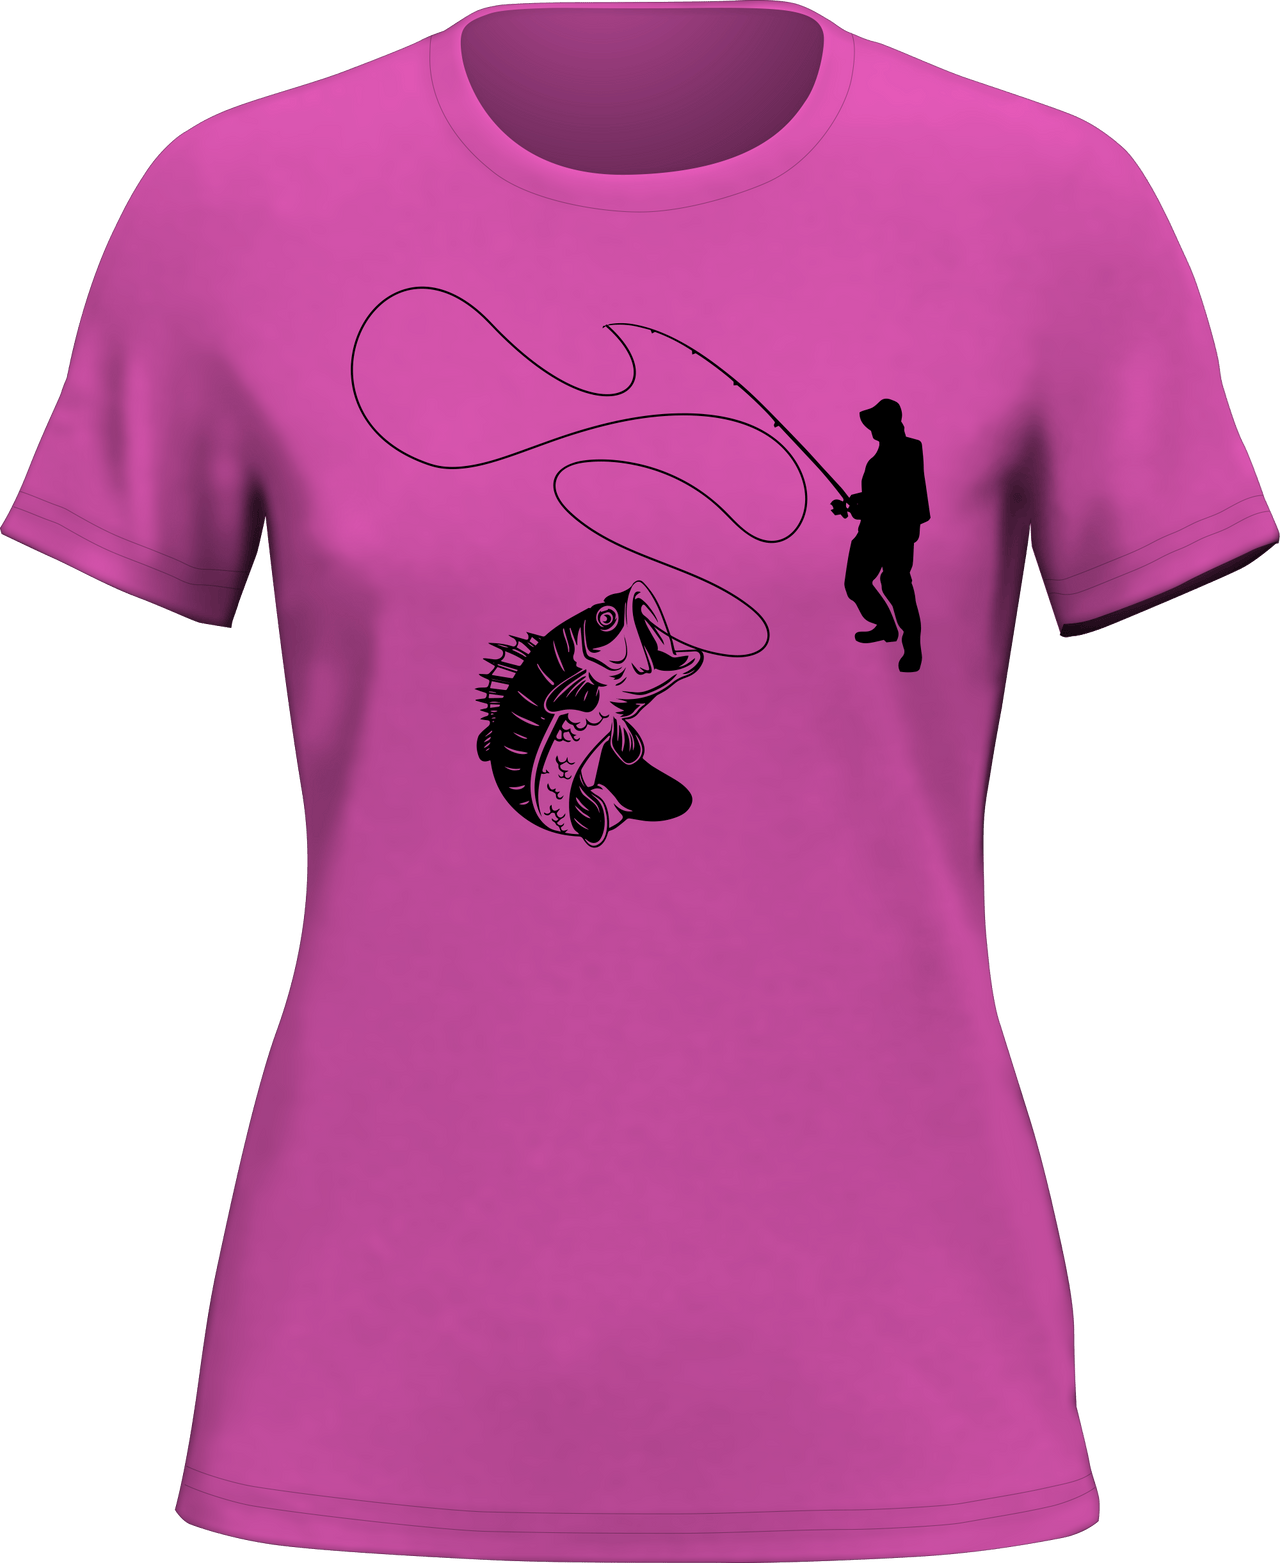 Fishing Lines T-Shirt for Women